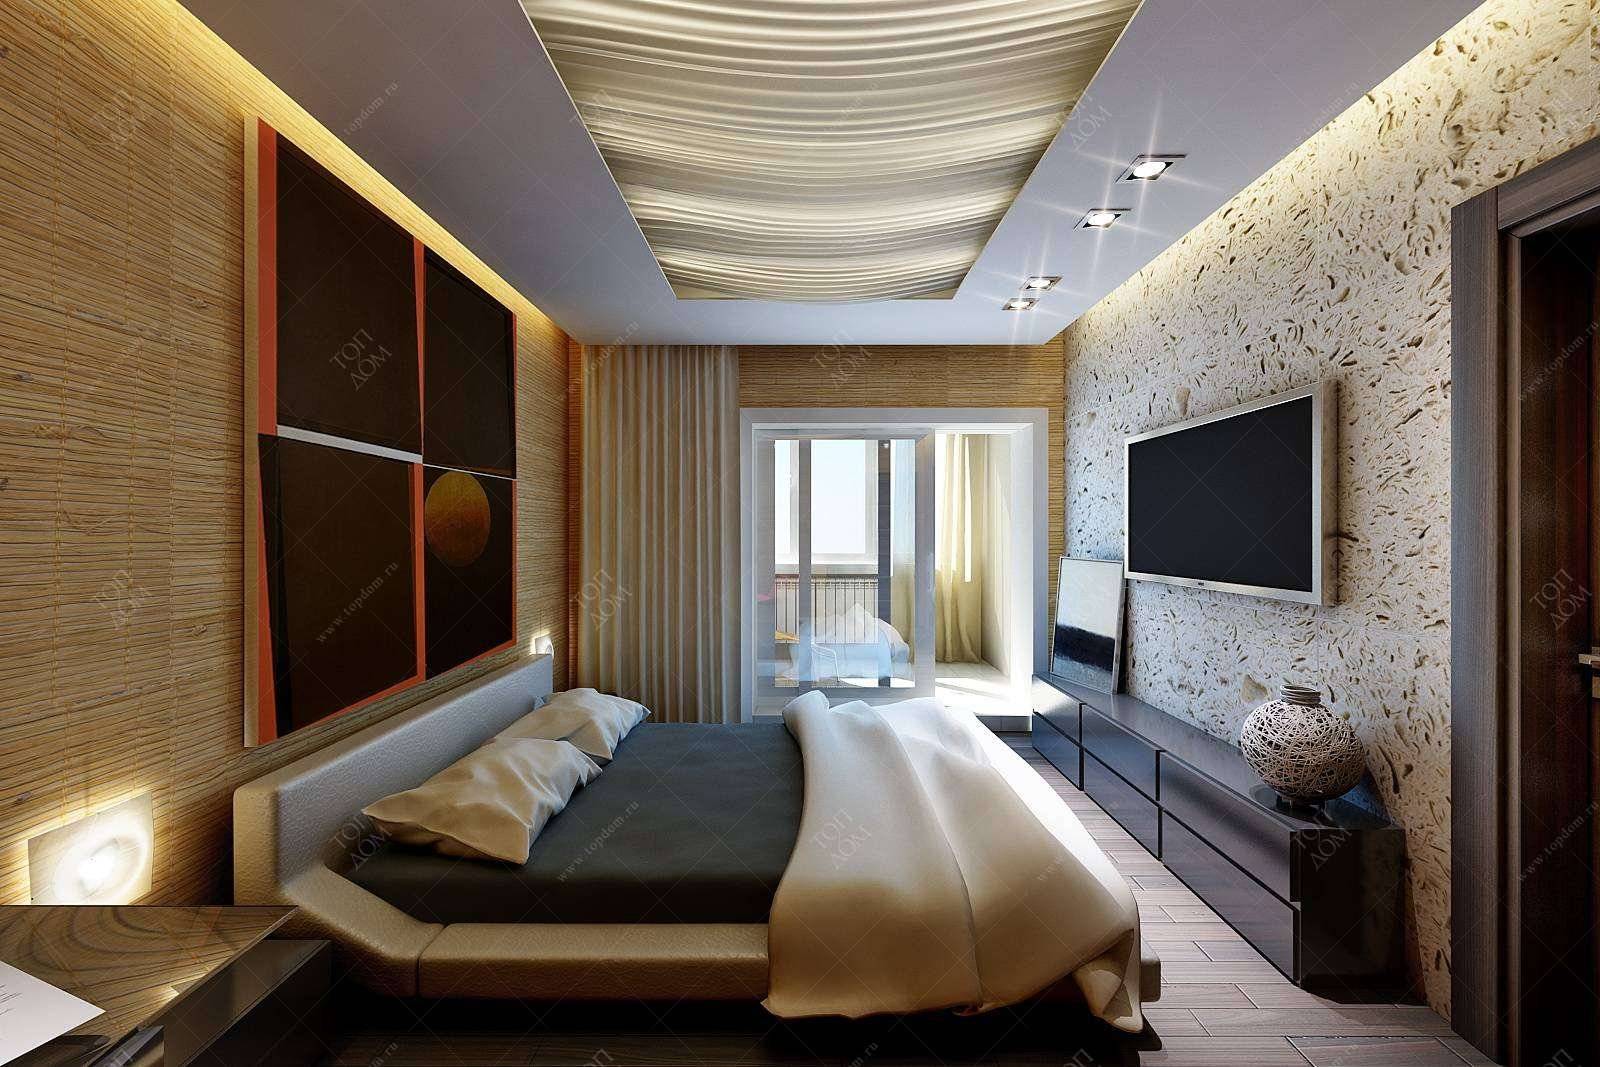 Спальня 11 кв. м: топ-200 фото новинок дизайна и планировки, варианты размещения мебели и цветовых сочетаний интерьера